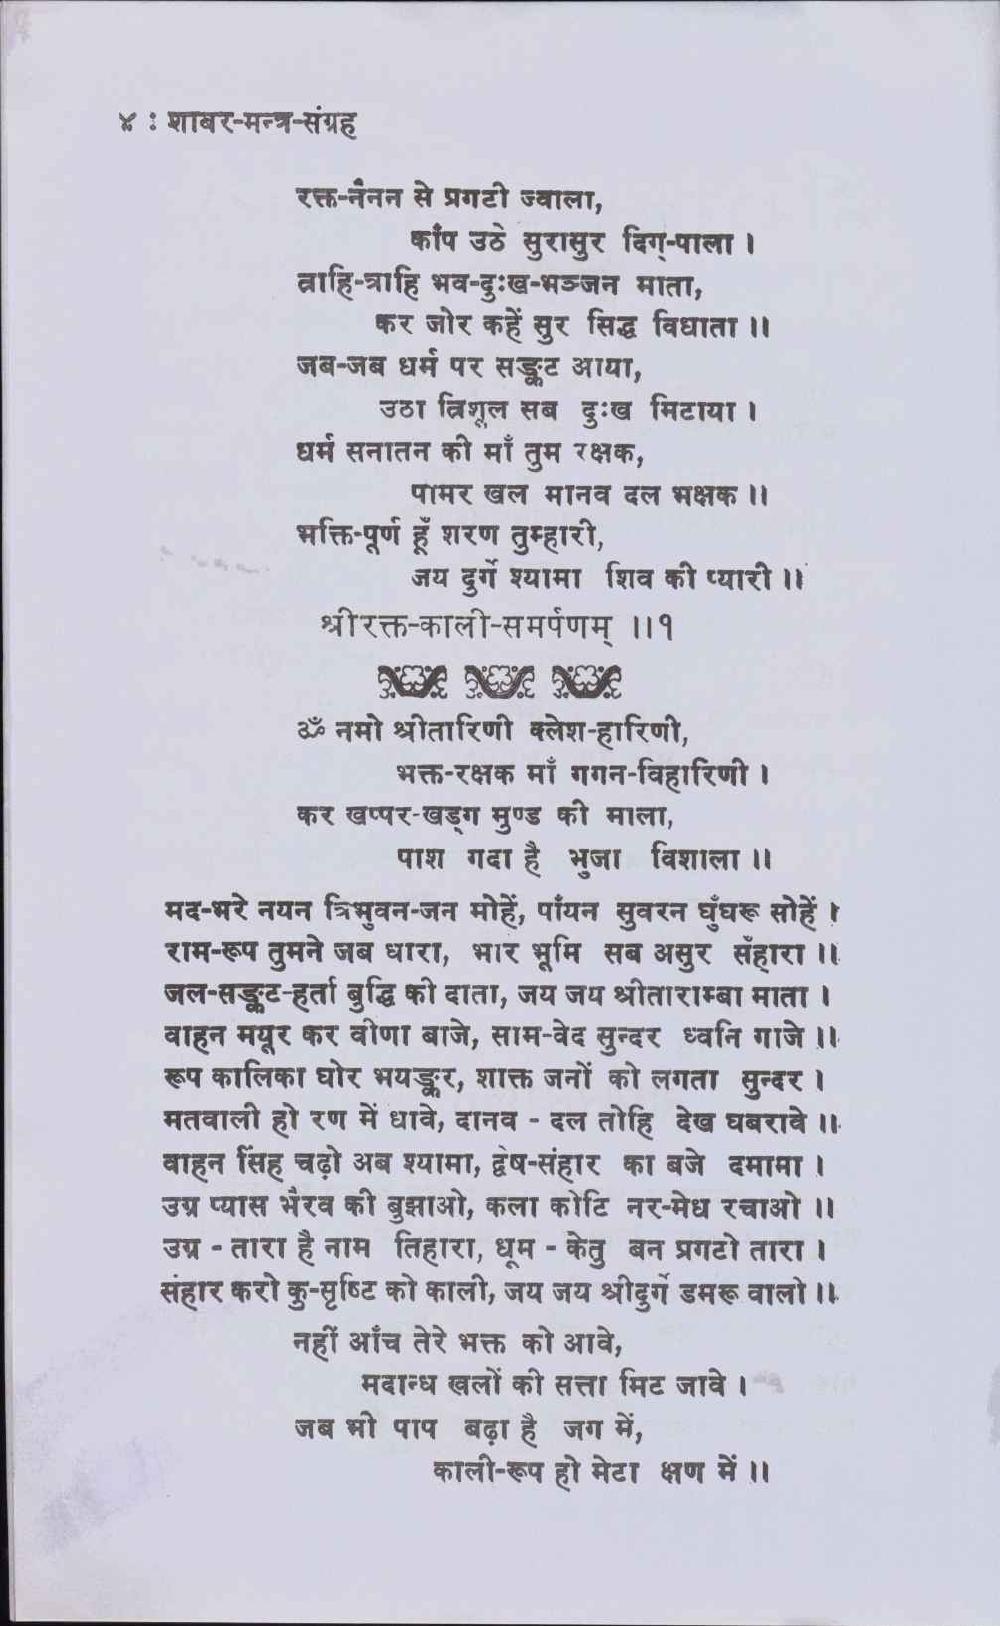 shabar mantra sangrah pdf free download